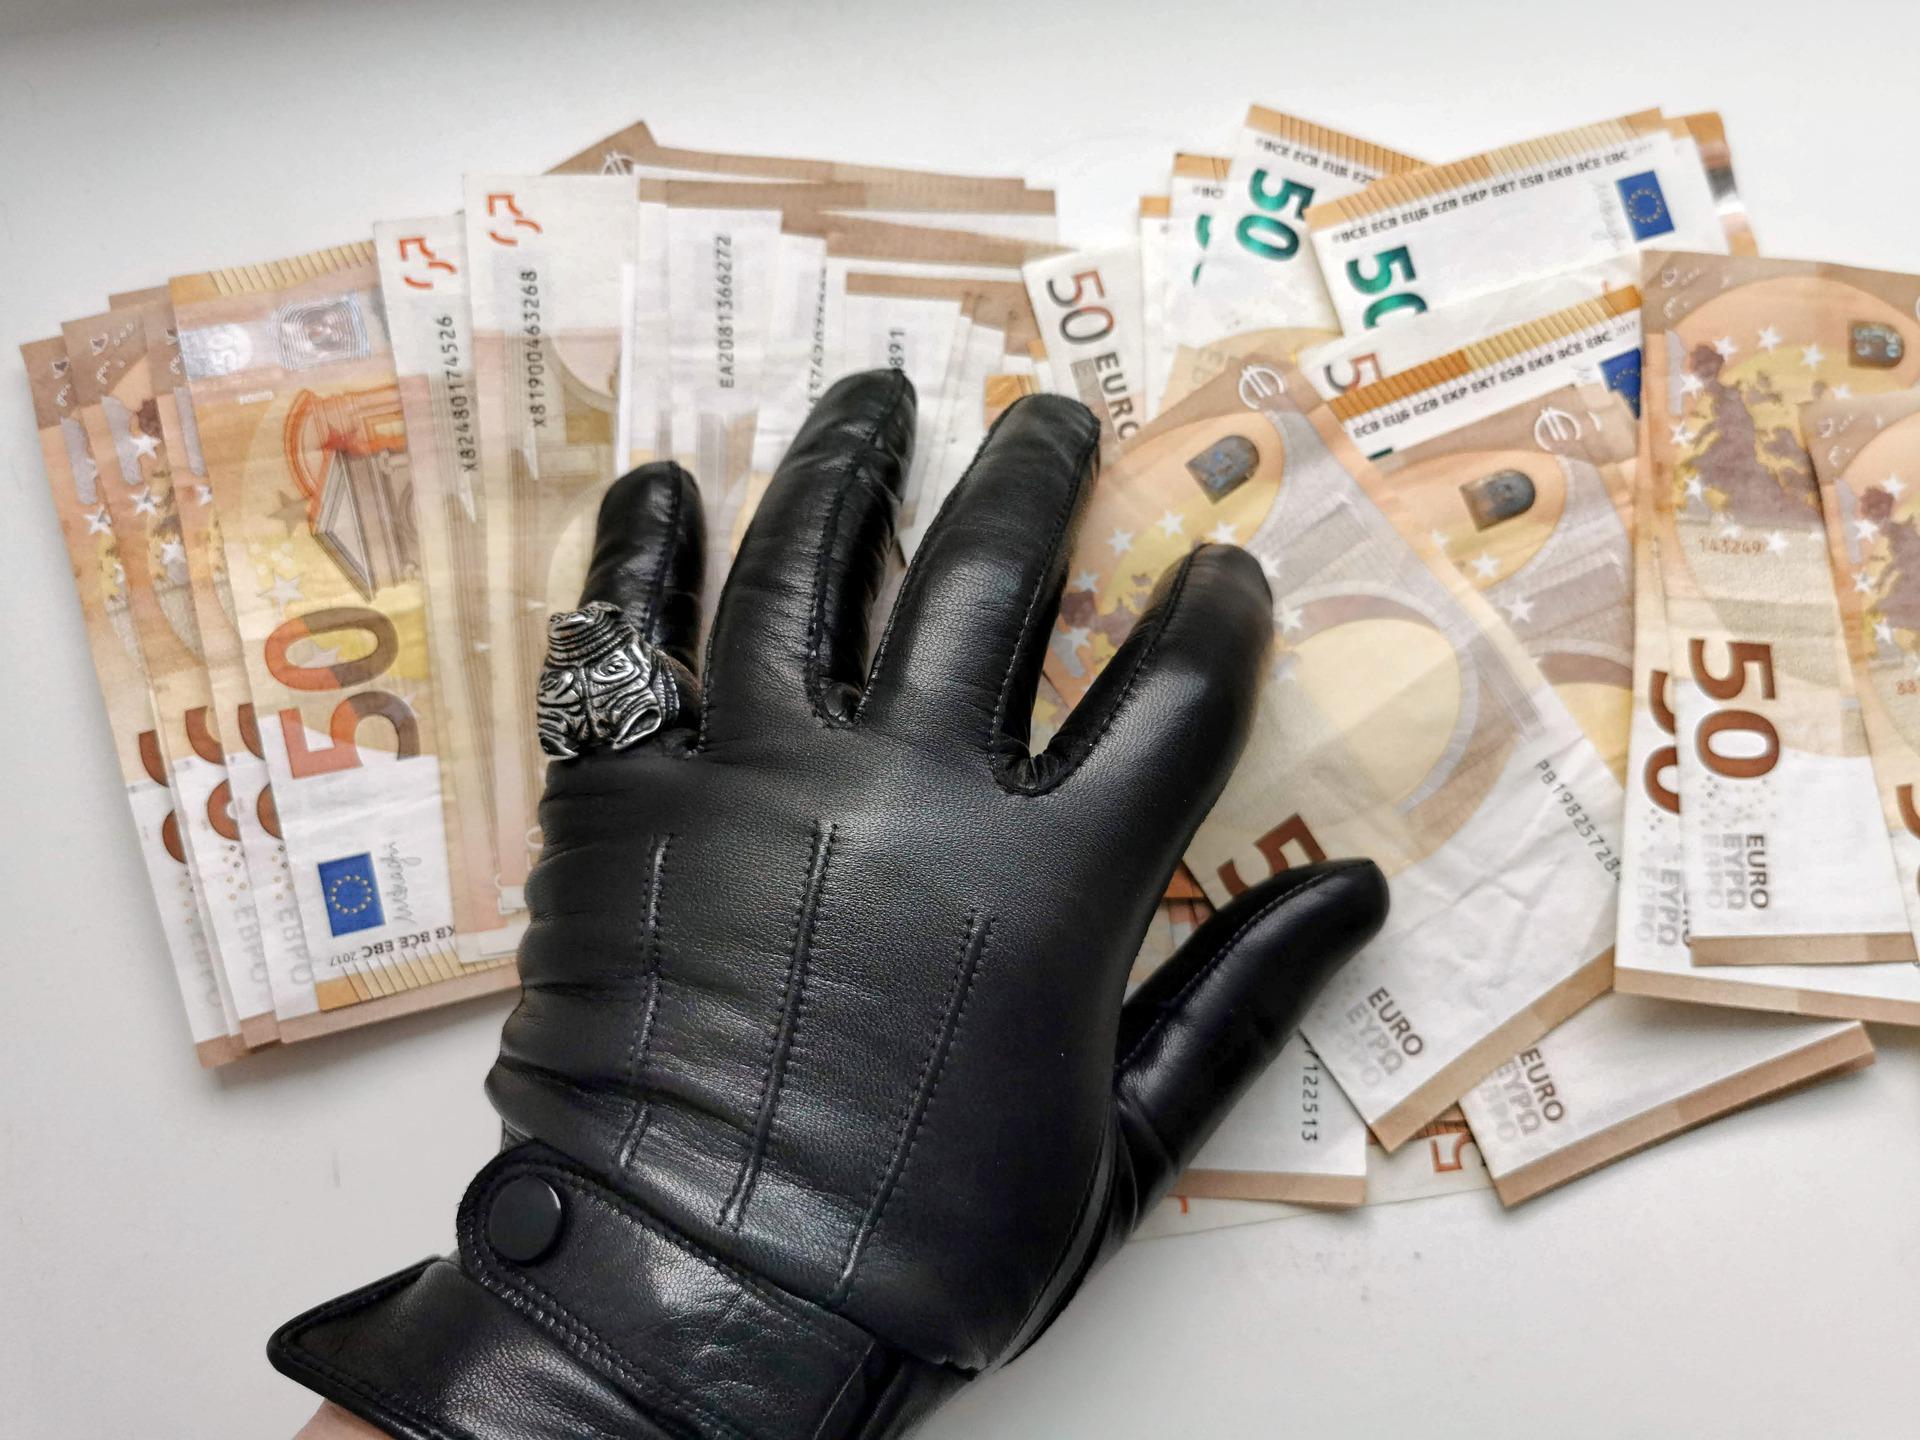 Вчера се разкри огромен скандал свързан с корупция във Варна